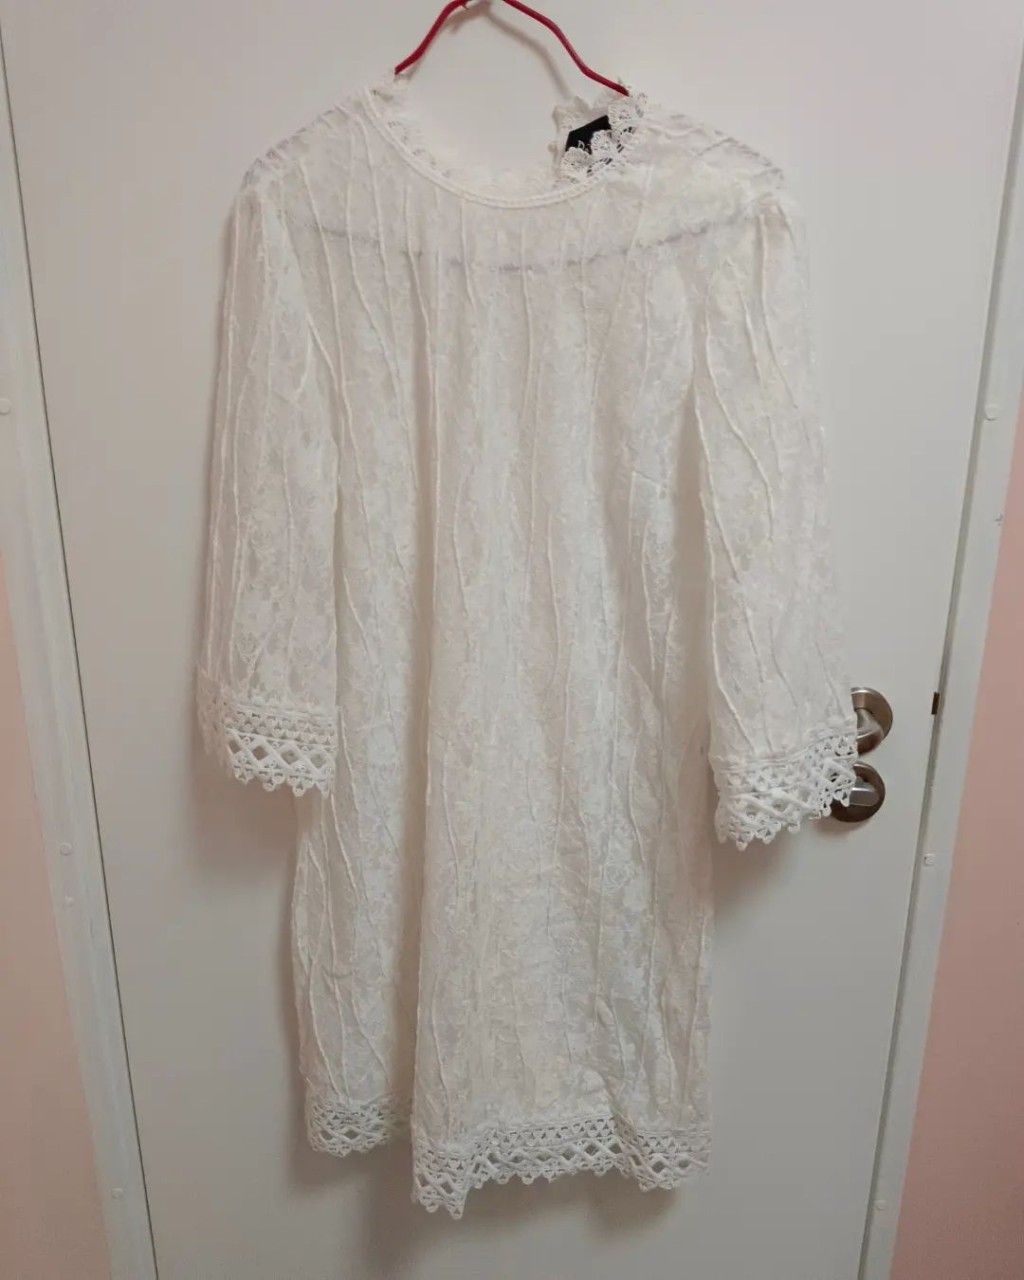 薛影仪近日疑似转型「平民时尚KOL」，先是大晒价值50蚊的白色透视喱士连身短裙。